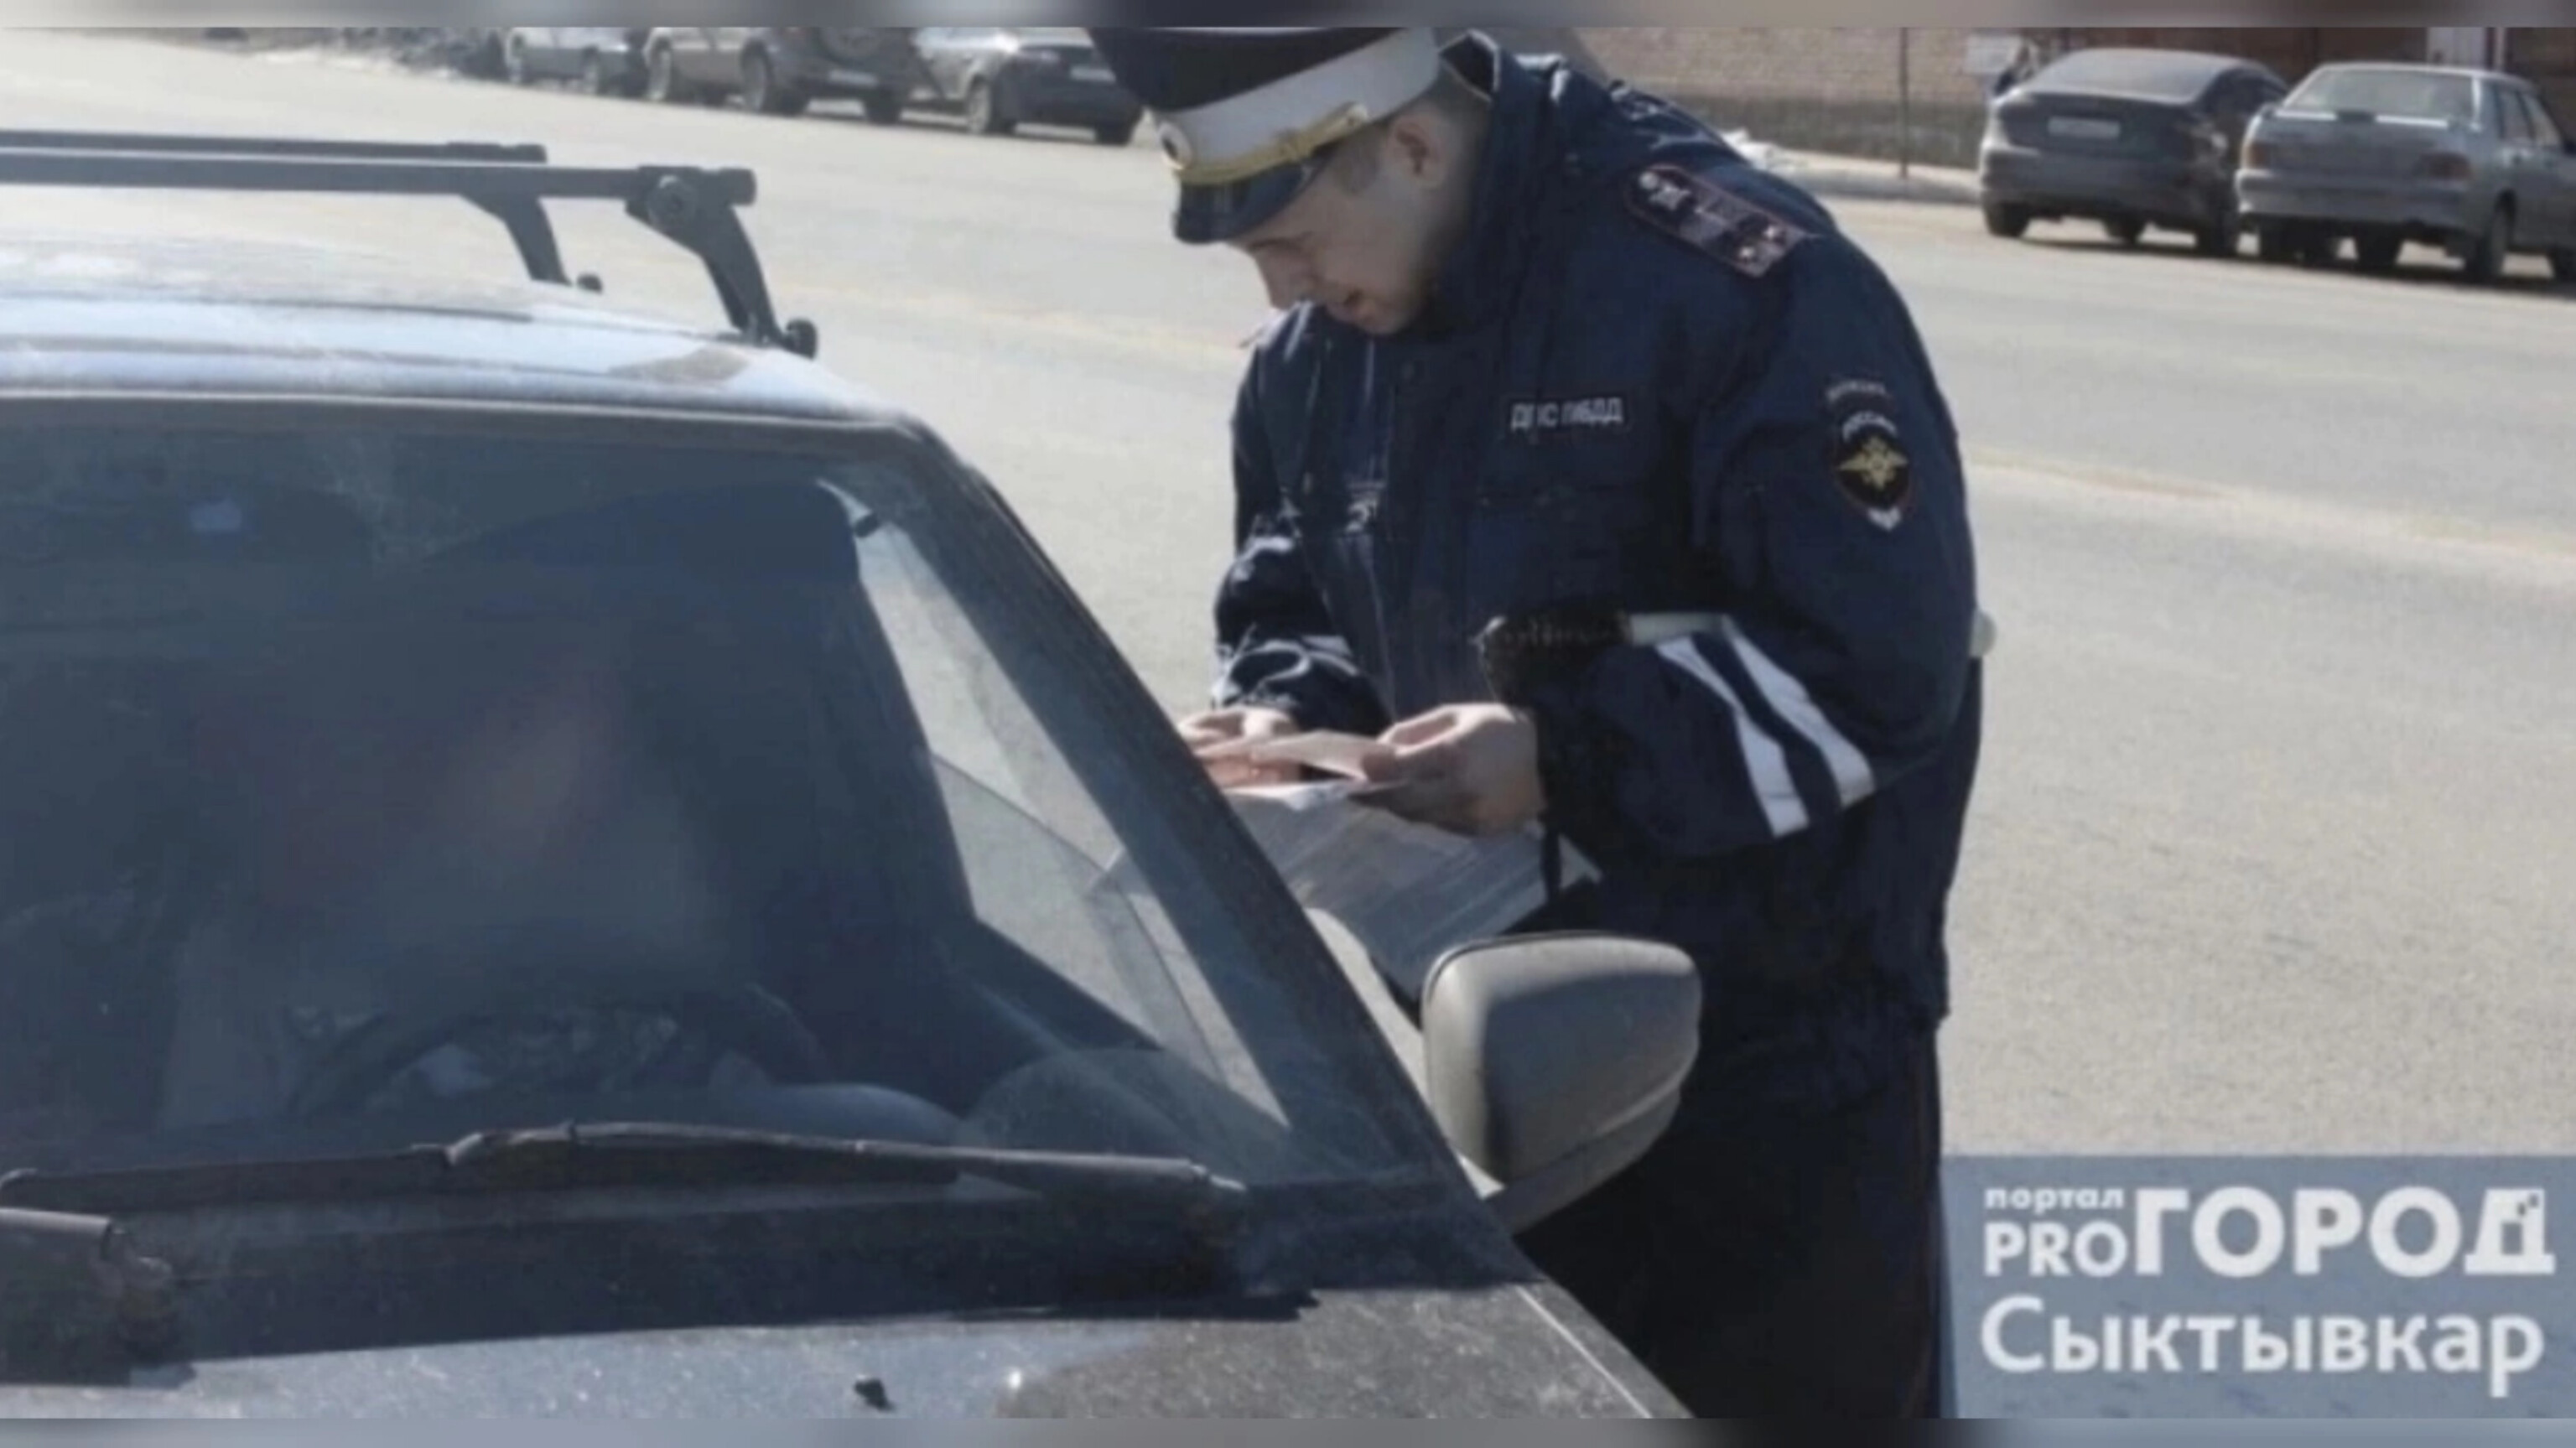 Сыктывкарский водитель поехал по делам и остался без своего авто